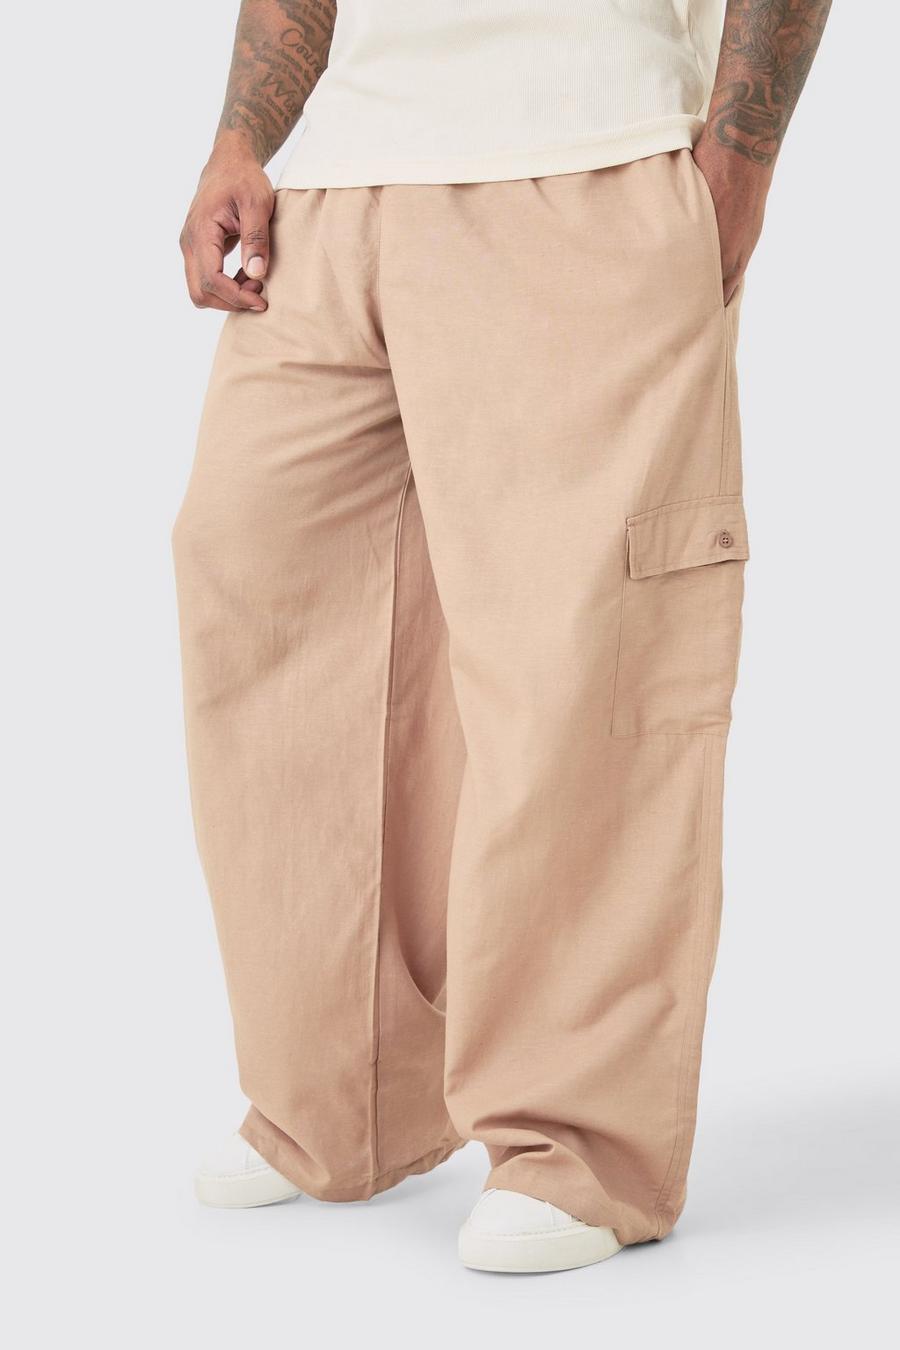 Pantalón Plus oversize cargo de lino con cintura elástica en color topo, Taupe